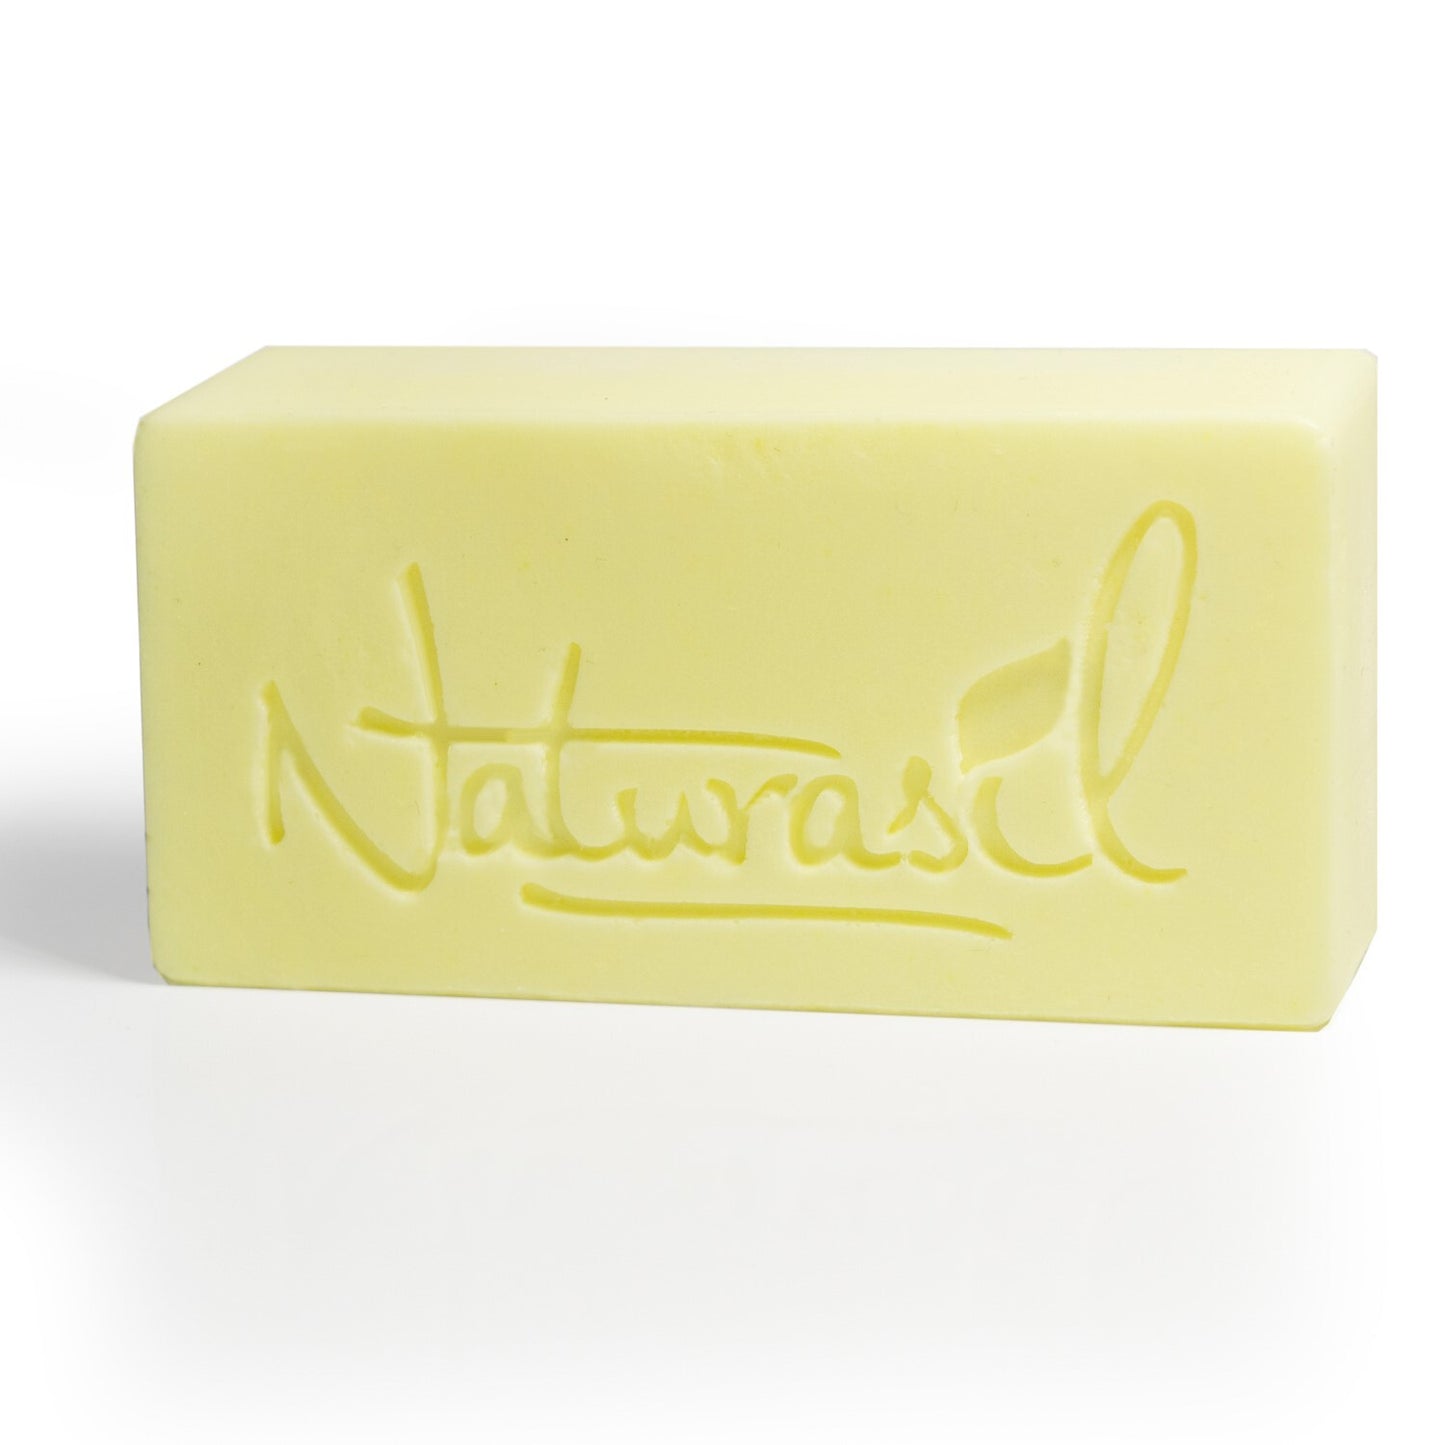 Premium Sulfur Lavender Soap | 10% Sulfur Advanced Cleansing Bar 4oz (6 - Pack) - Naturasil